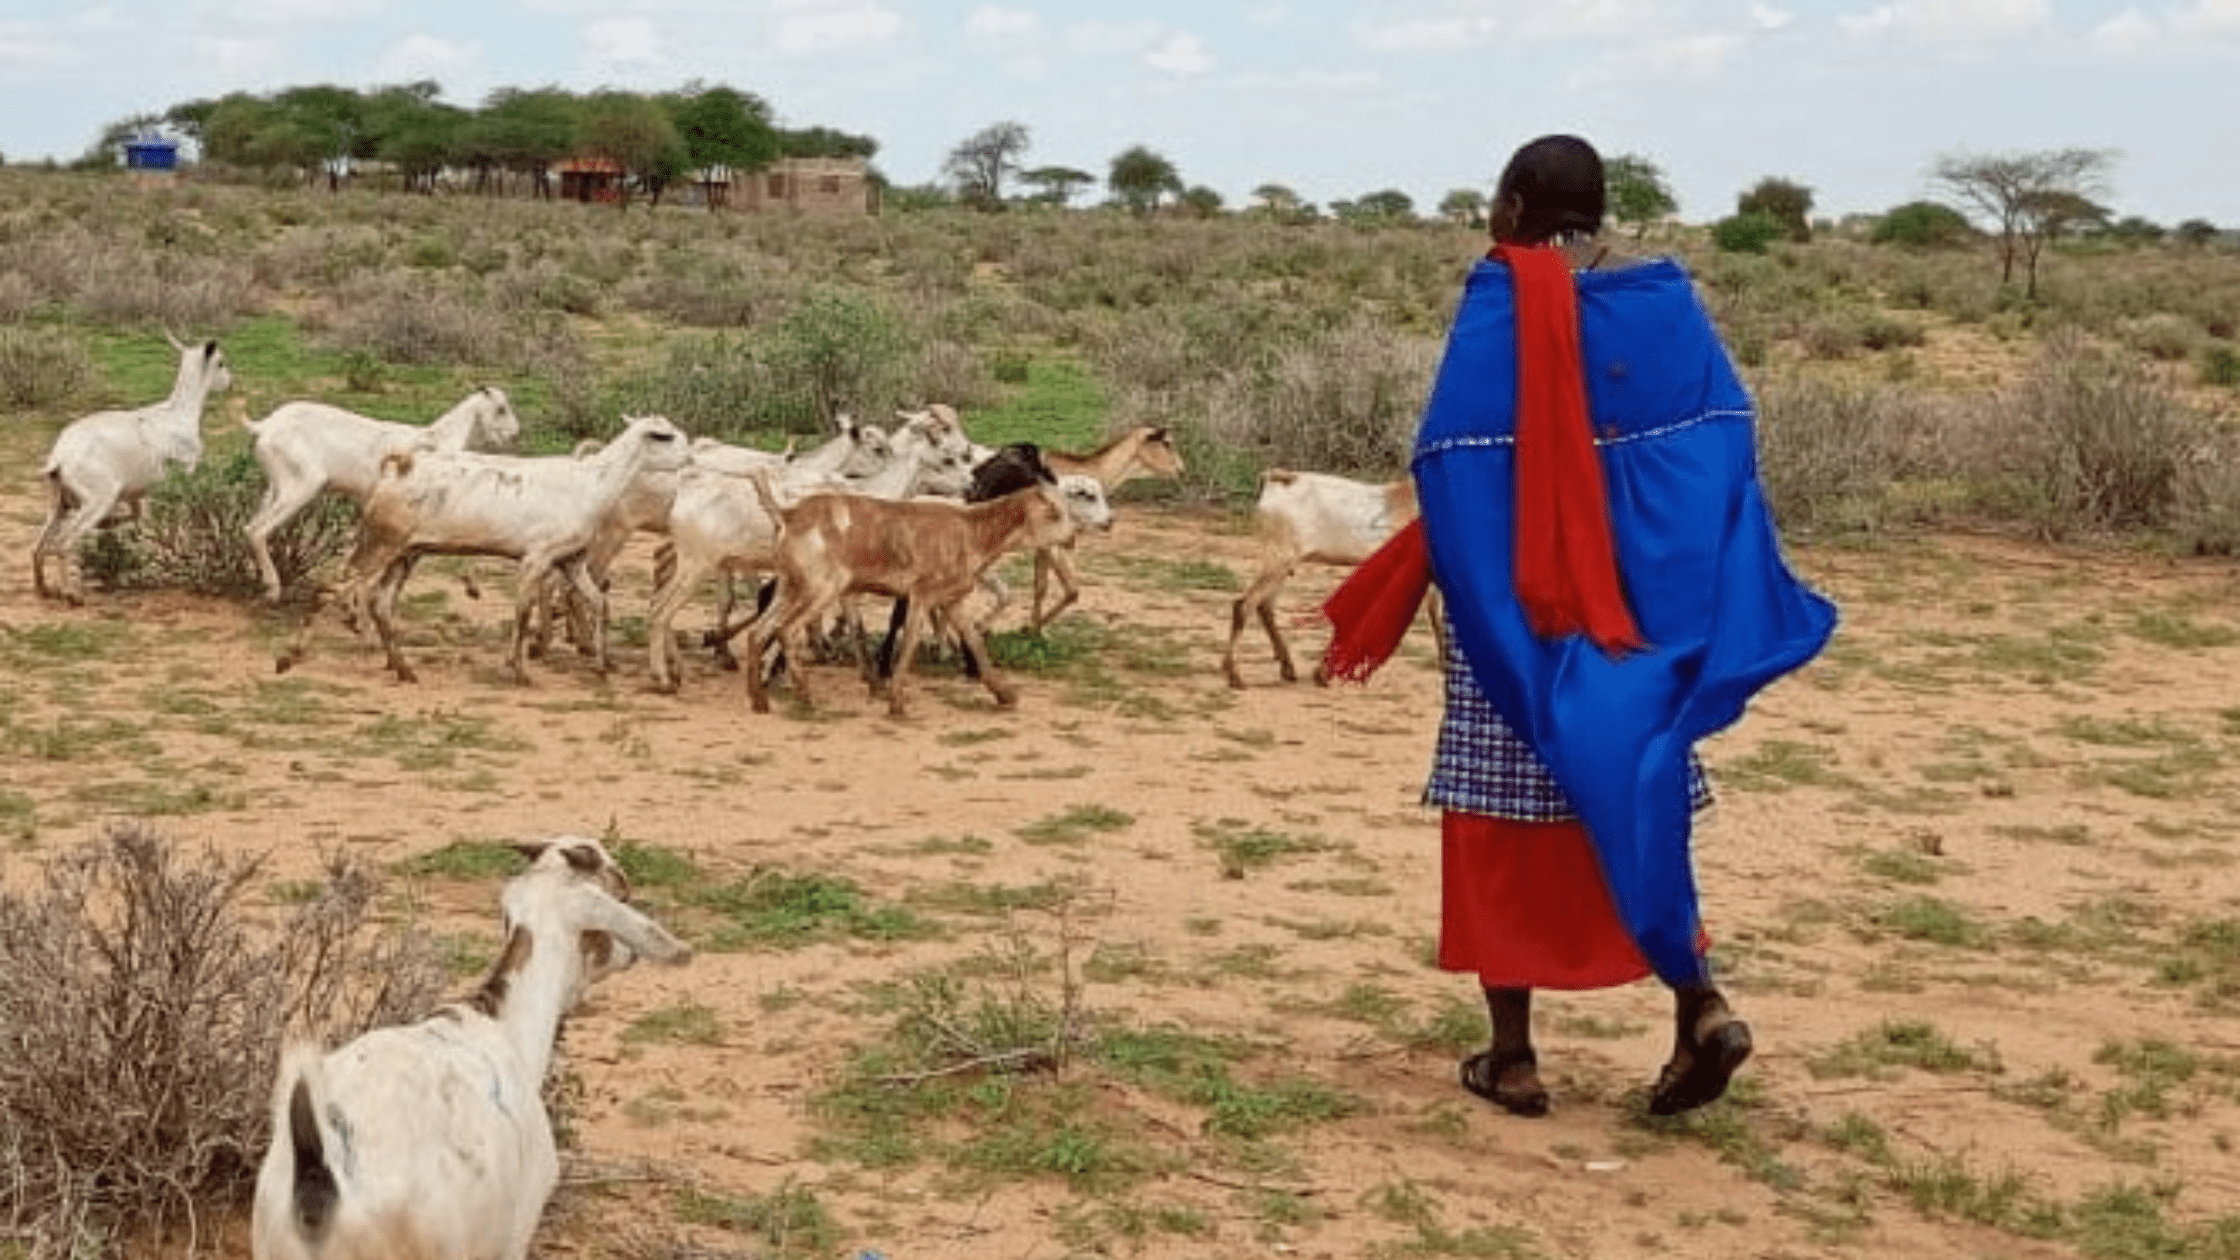 Maasai woman and goats